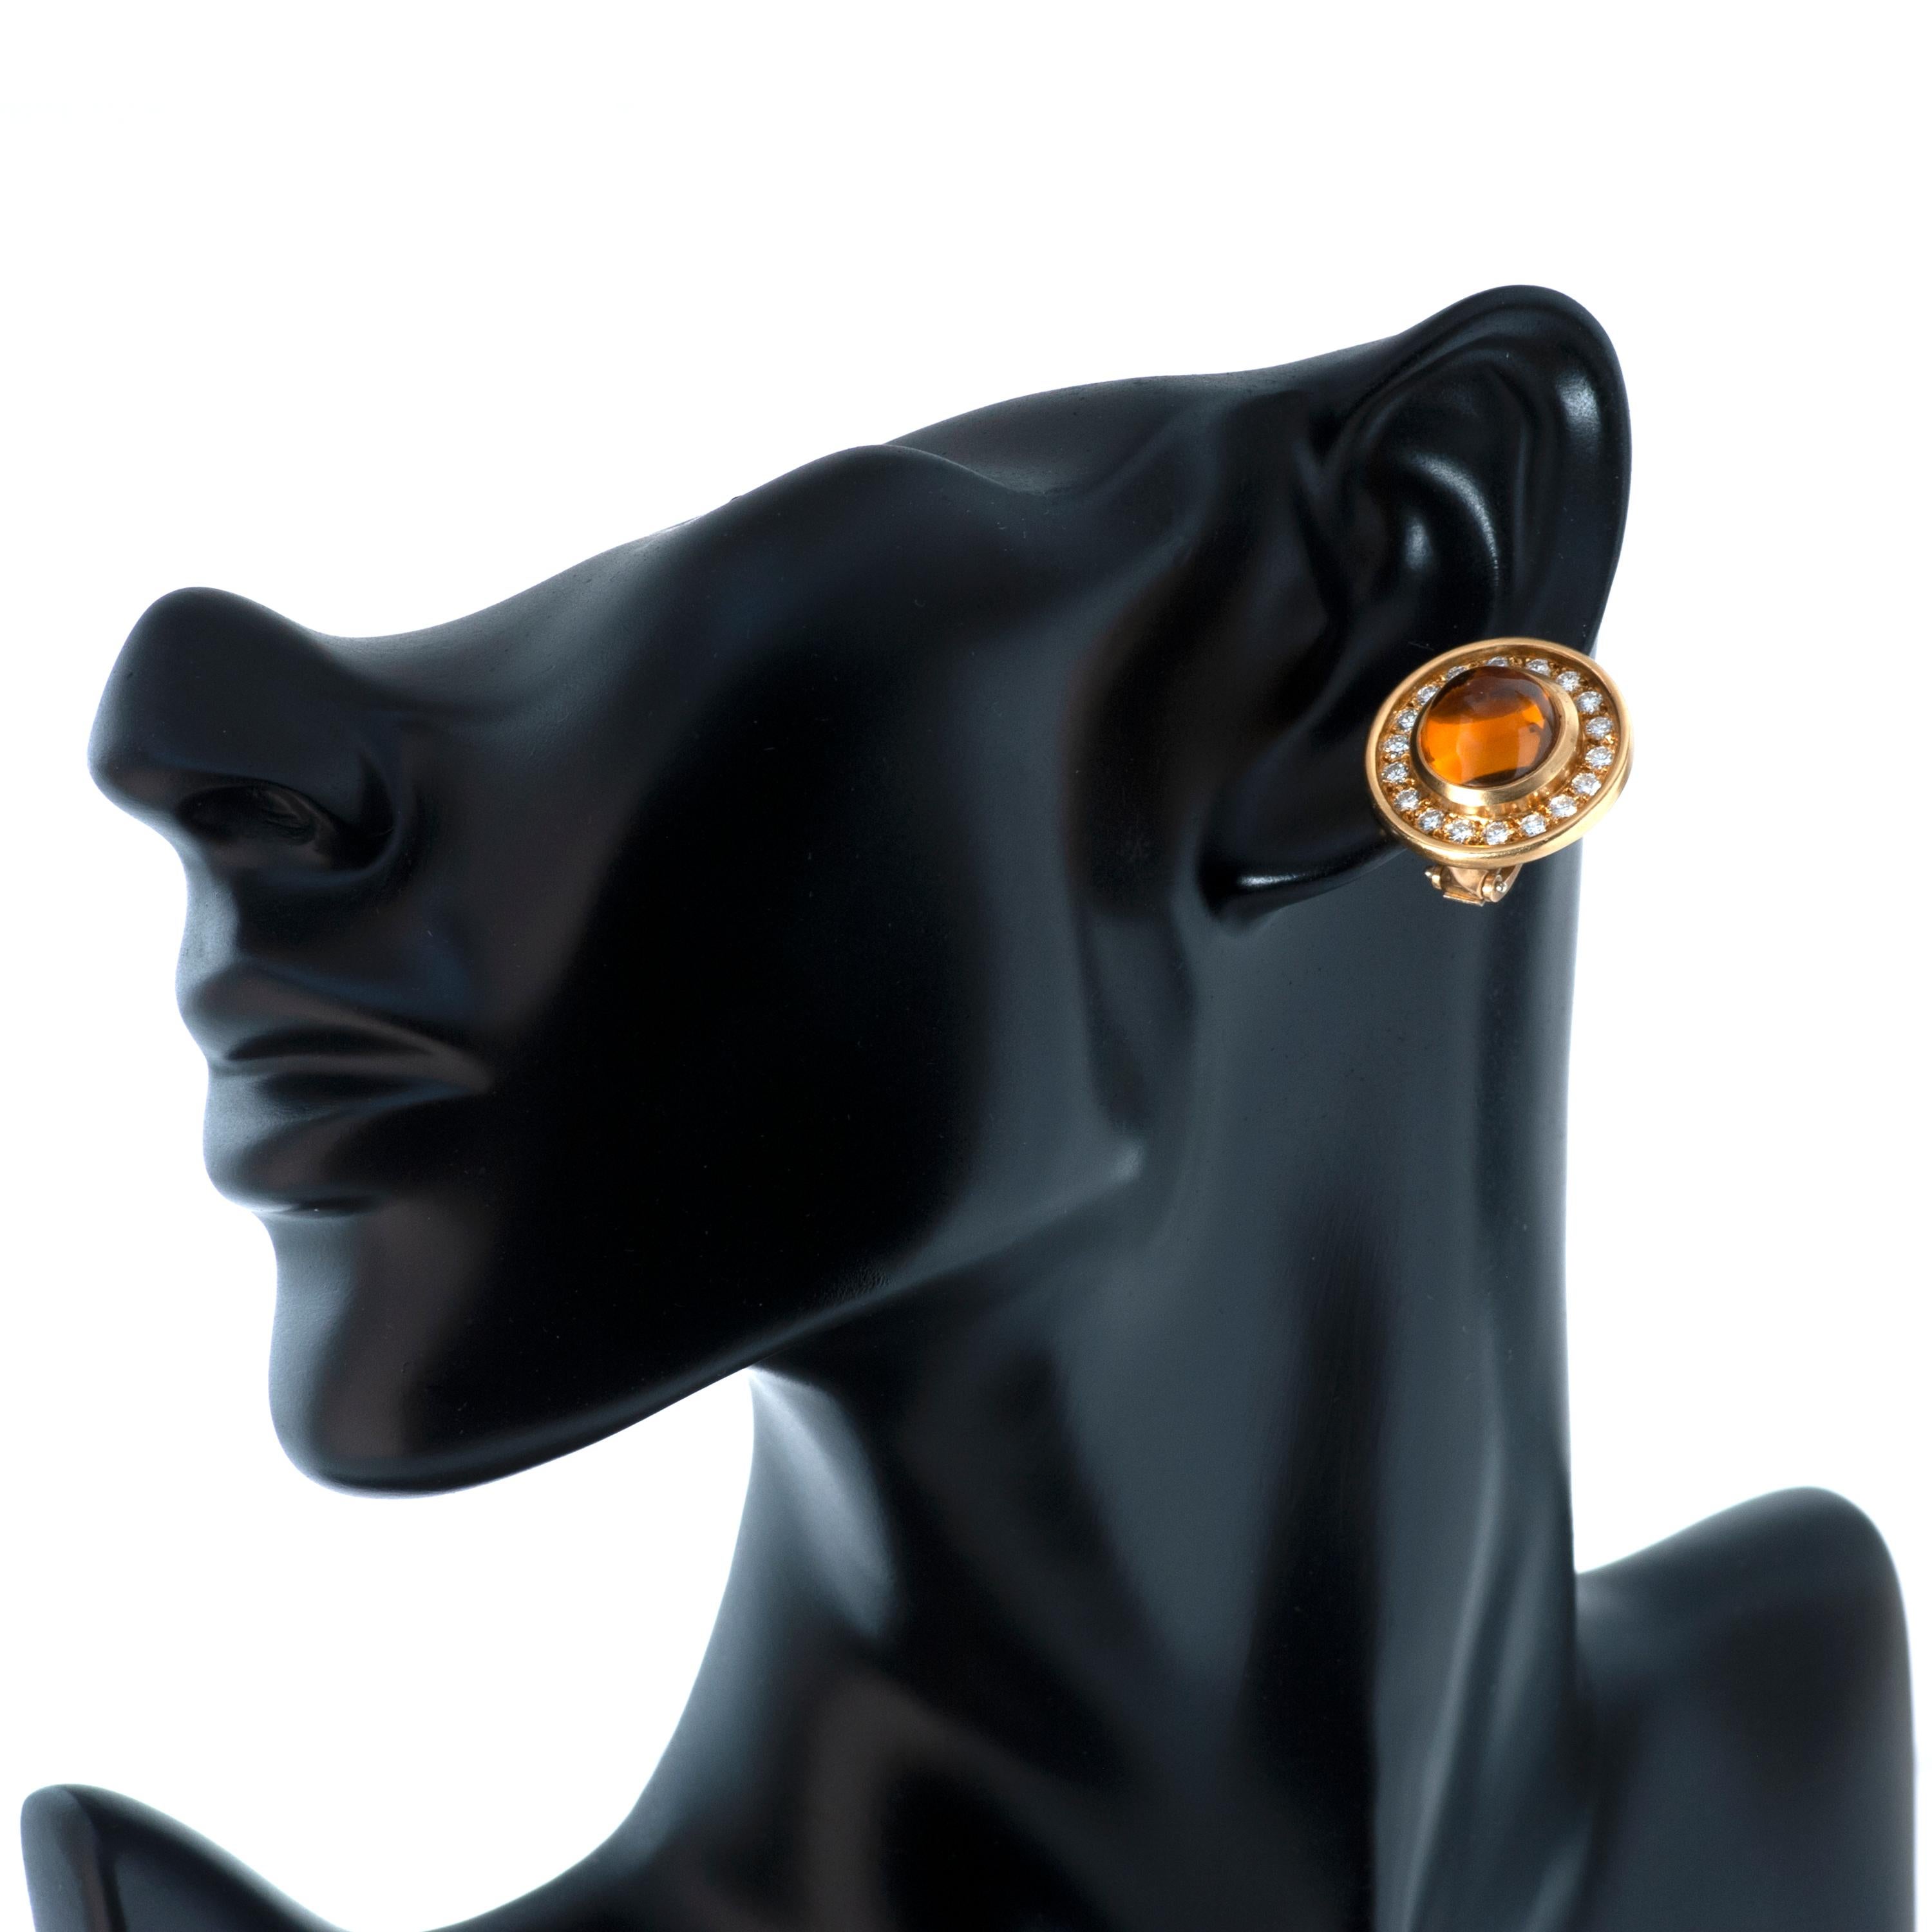 Boucles d'oreilles Barry Kieselstein-Cord en or jaune 18k, diamant et citrine, avec fermoir à clip.

Ces boucles d'oreilles comportent 2 citrines cabochon pesant approximativement 5.20 carats, entourées de 36 diamants ronds pesant approximativement